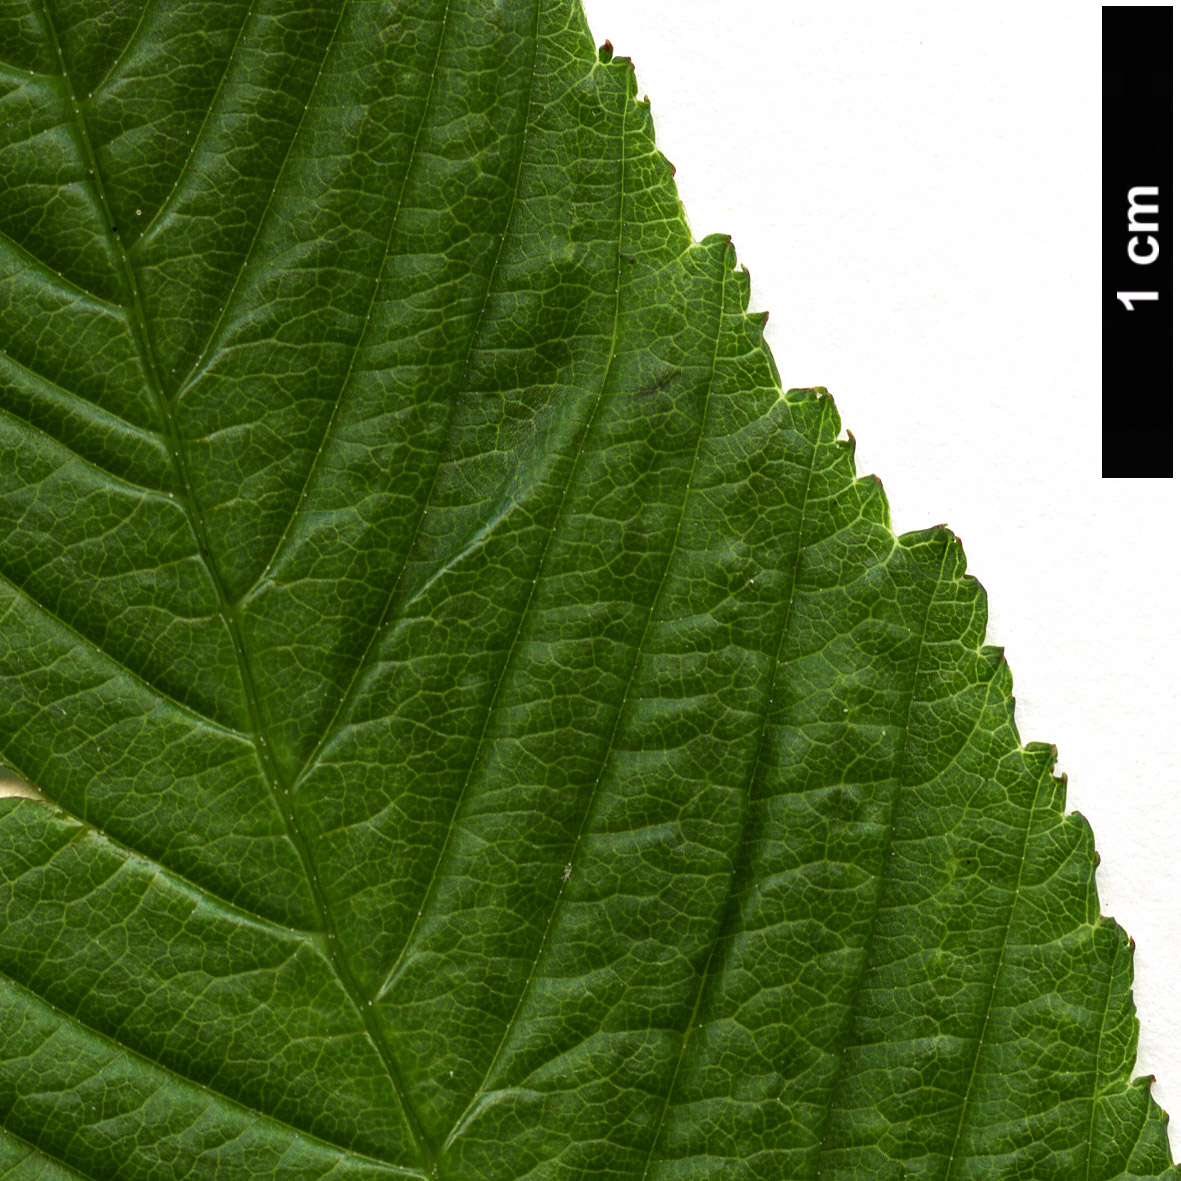 High resolution image: Family: Rosaceae - Genus: Rubus - Taxon: rosifolius - SpeciesSub: ‘Coronarius’